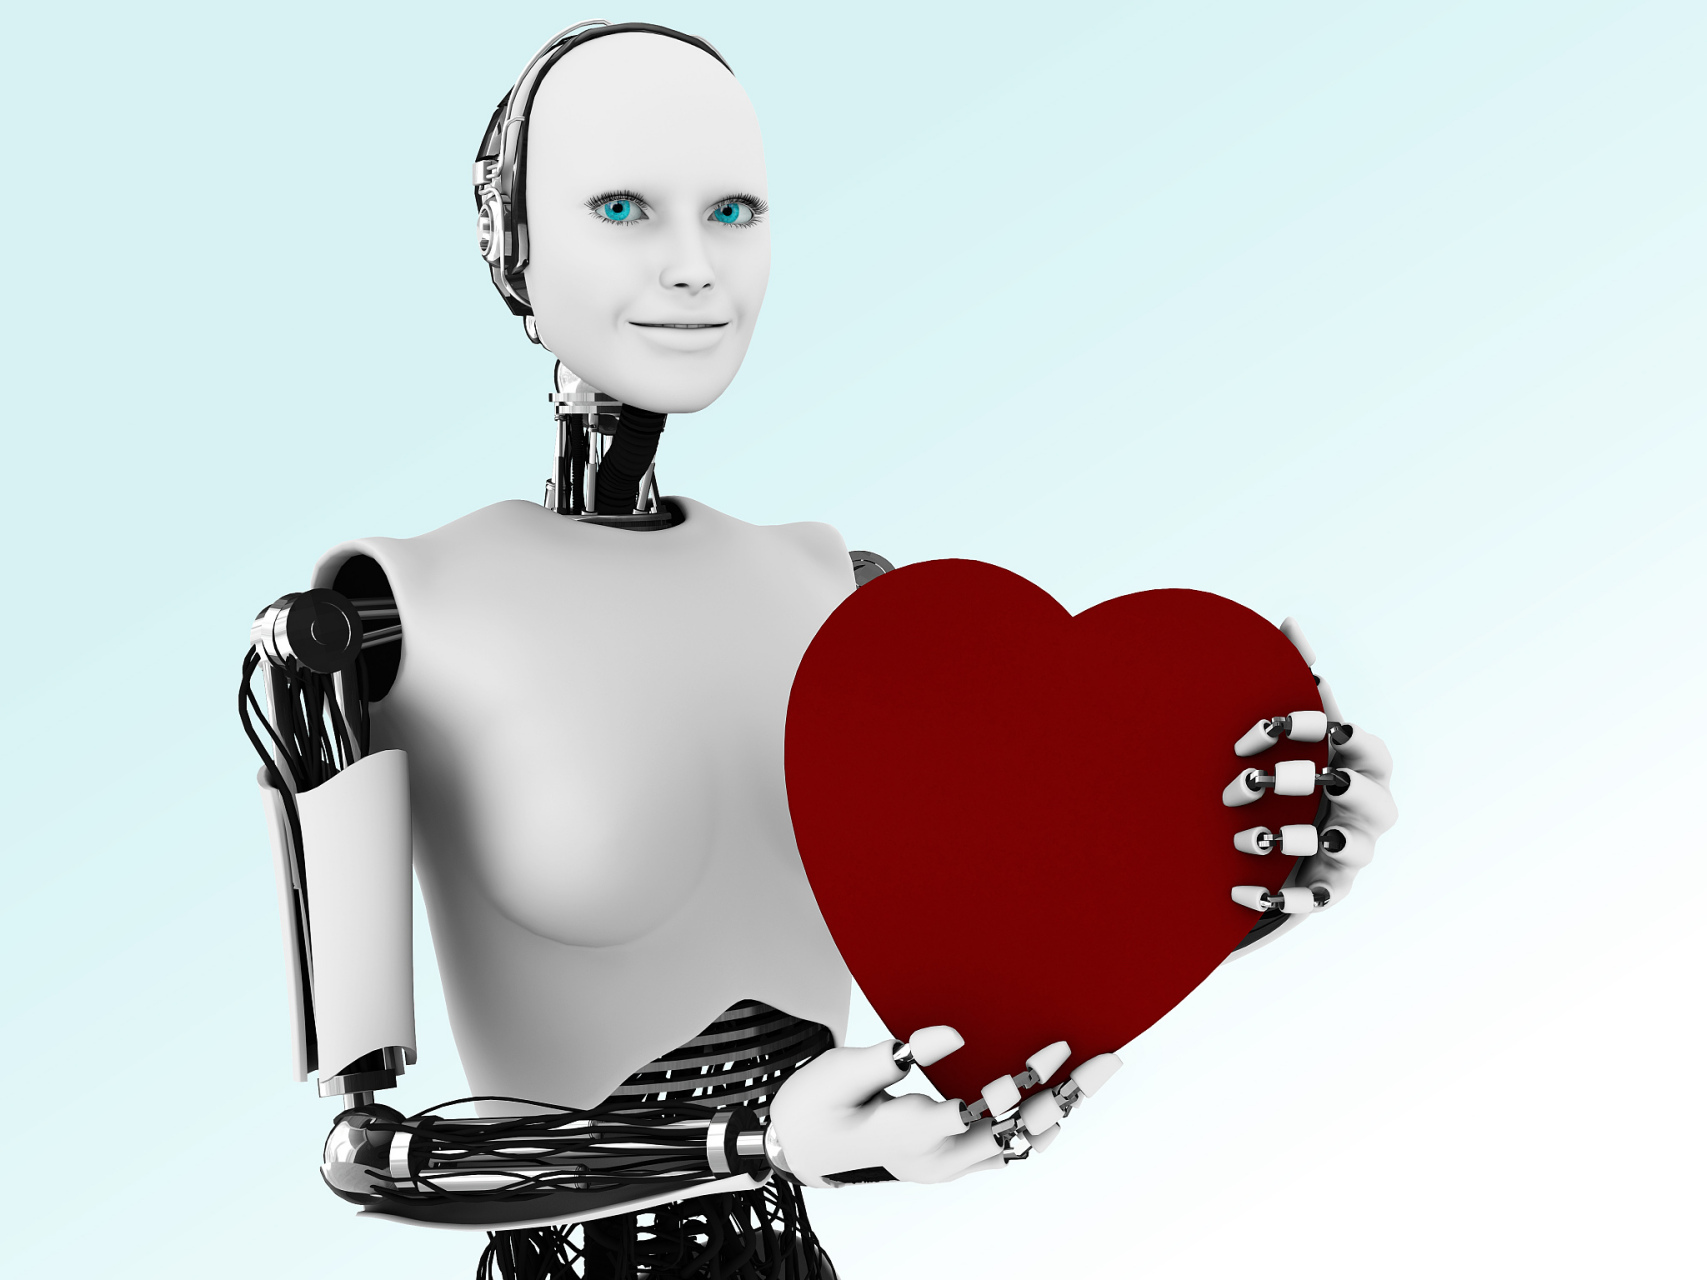 试问，当一款情感机器人出世，会带来多大的影响？